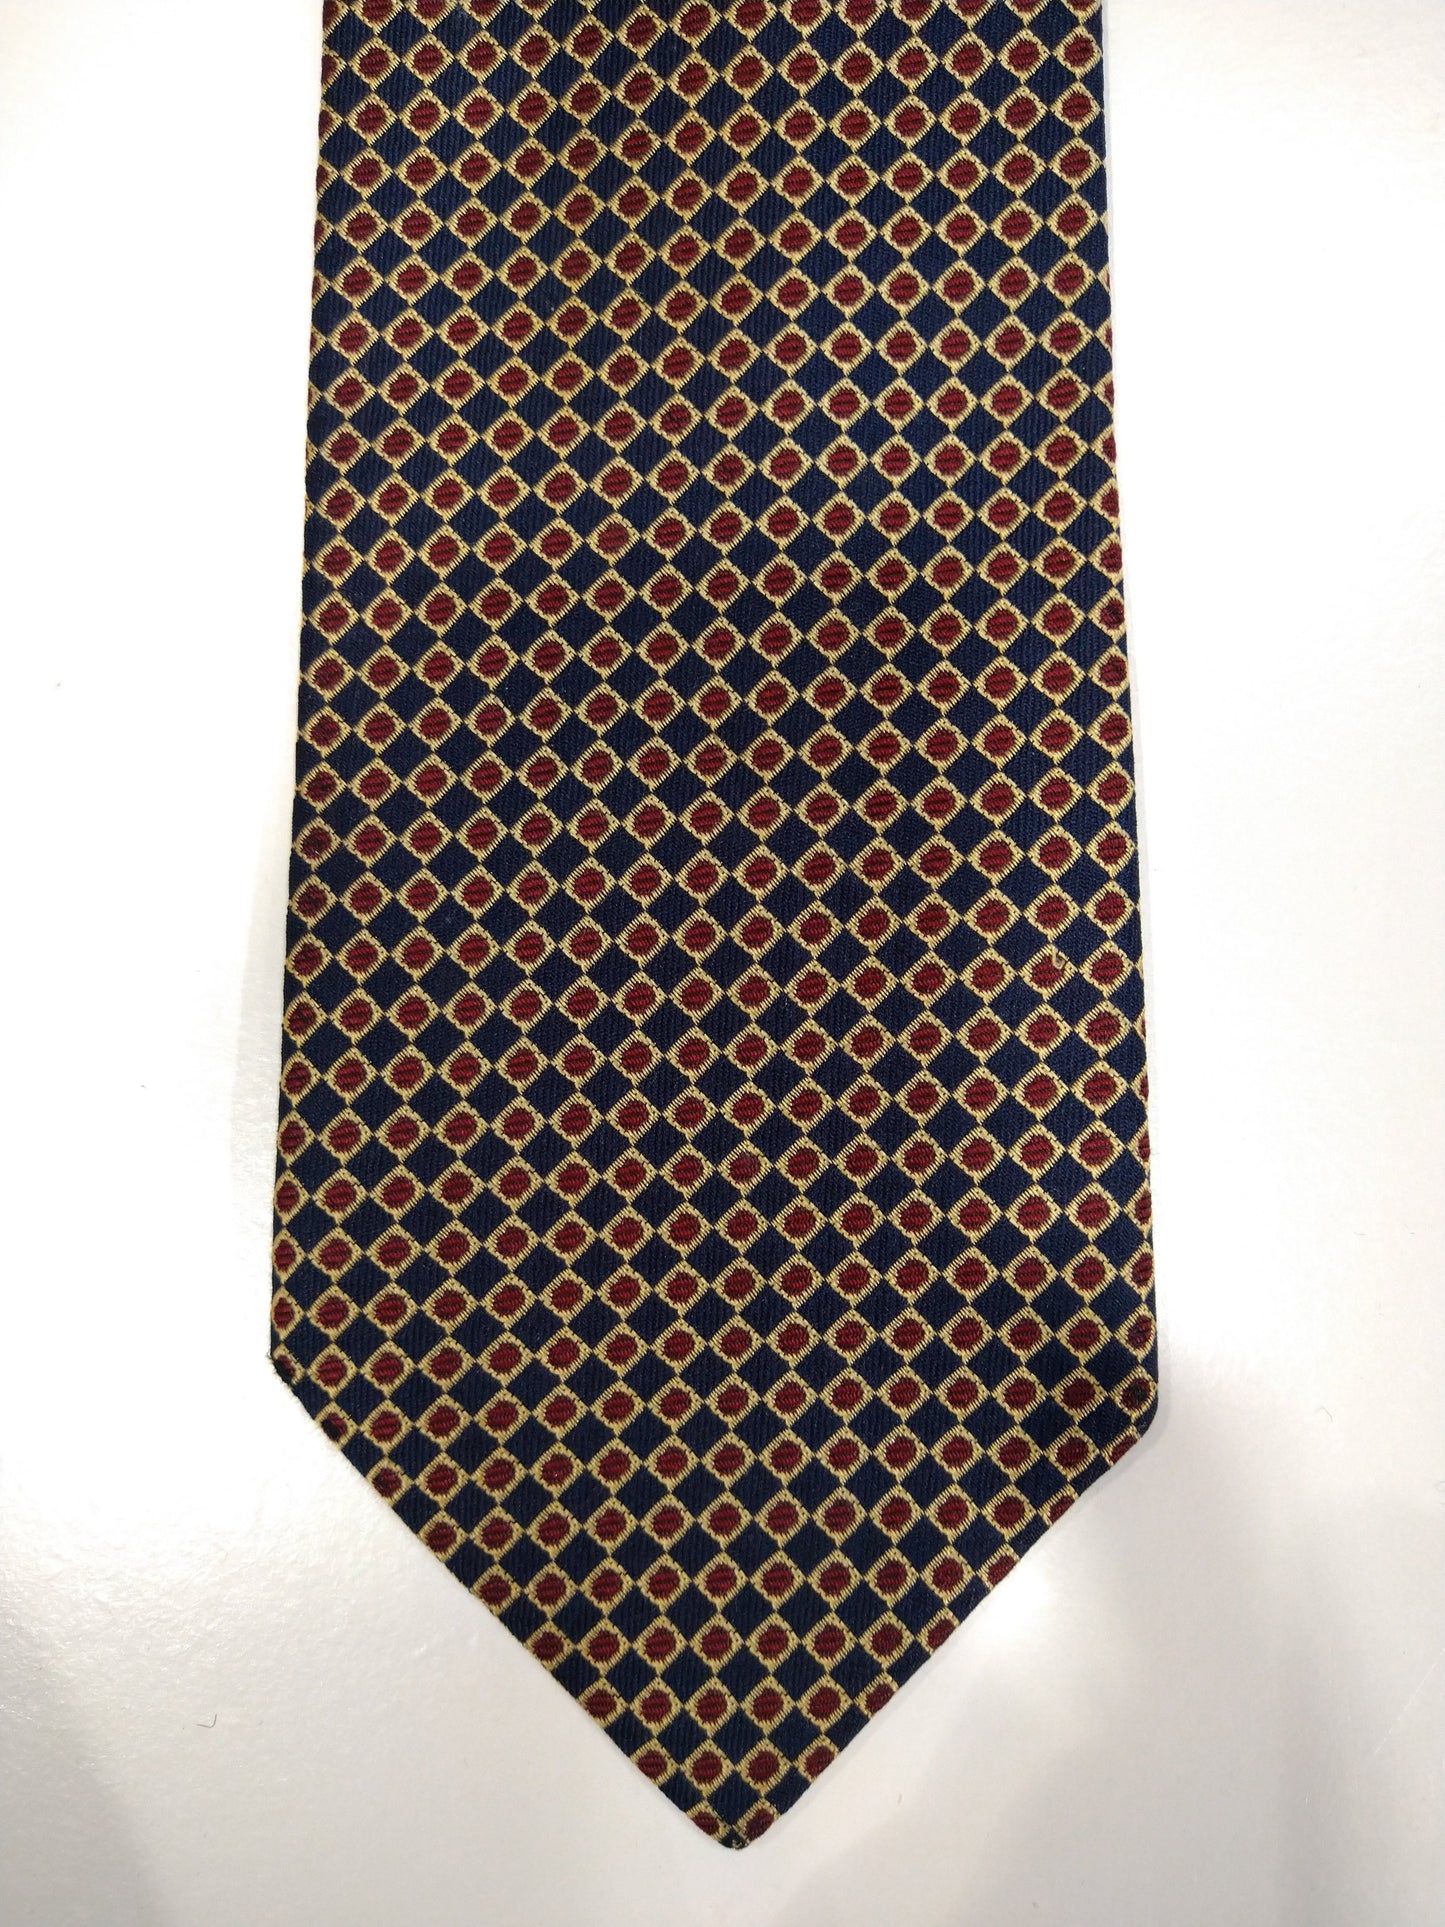 Vintage zijde stropdas. Blauw met goud / rood bolletjes motief.